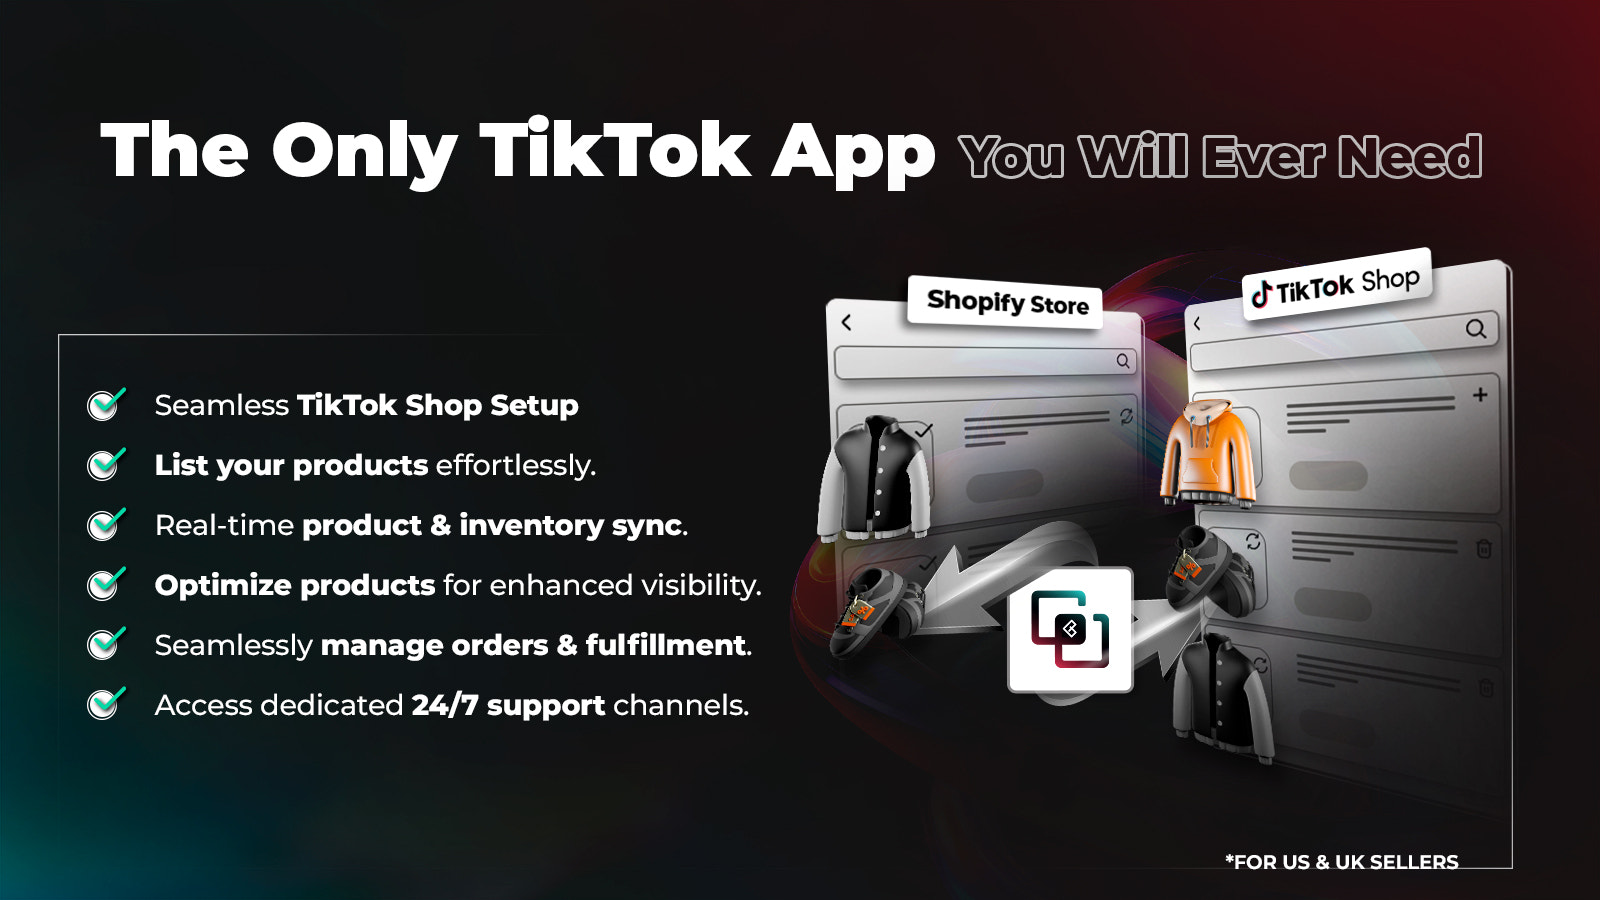 Simplification de la vente sur TikTok Shop grâce à une intégration sans effort